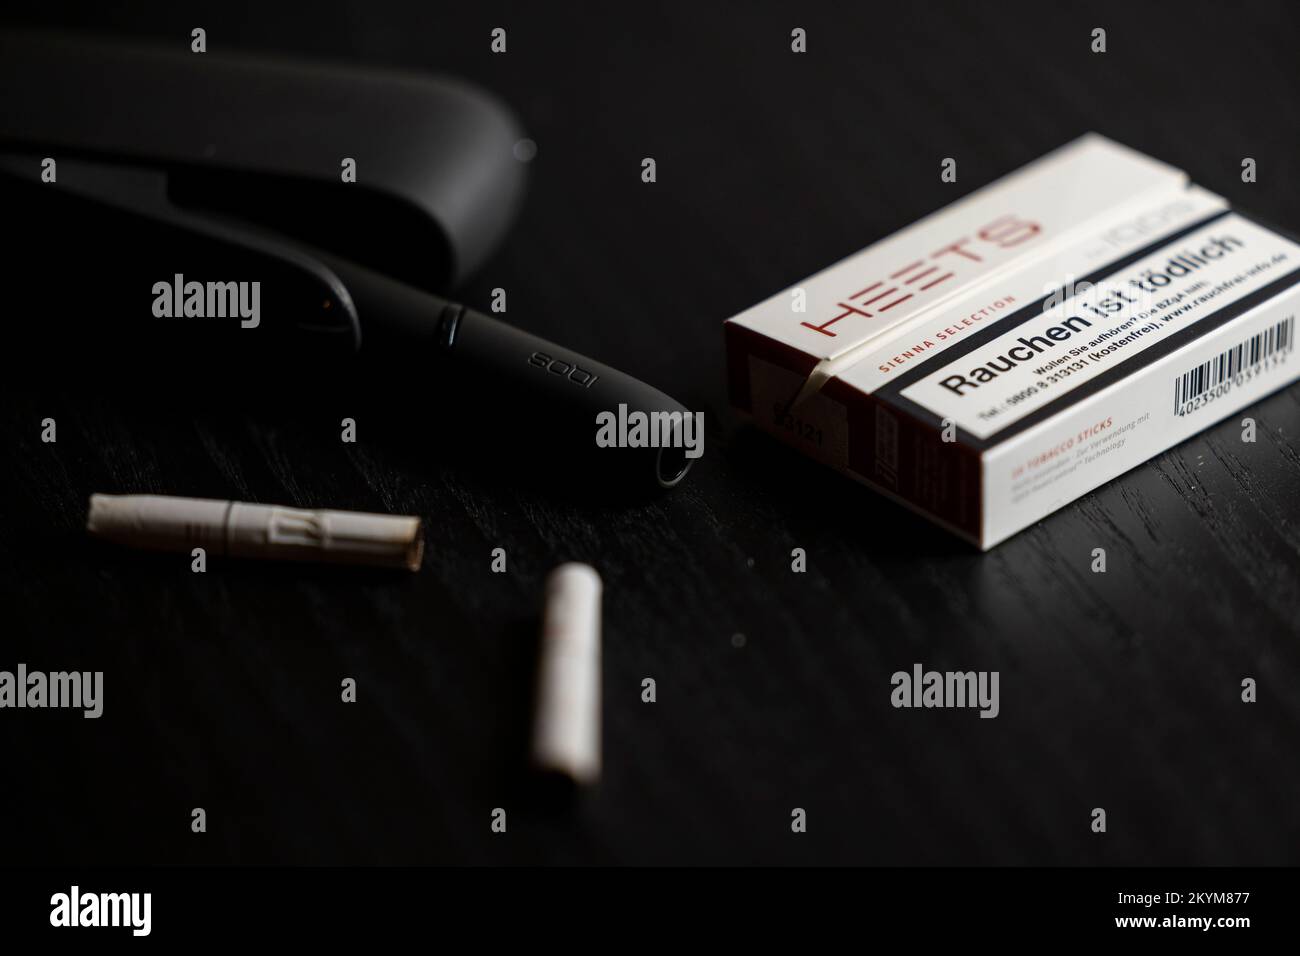 Neuchâtel, Schweiz. 21 Aug, 2018. Der Tabak Heizsystem Iqos der  Tabakkonzern Philip Morris International. Kurze Tabak Sticks (Blätter), die  halbe Größe von Zigaretten, gehen in den Pen-ähnliches Gerät, das heizt die  Tabak